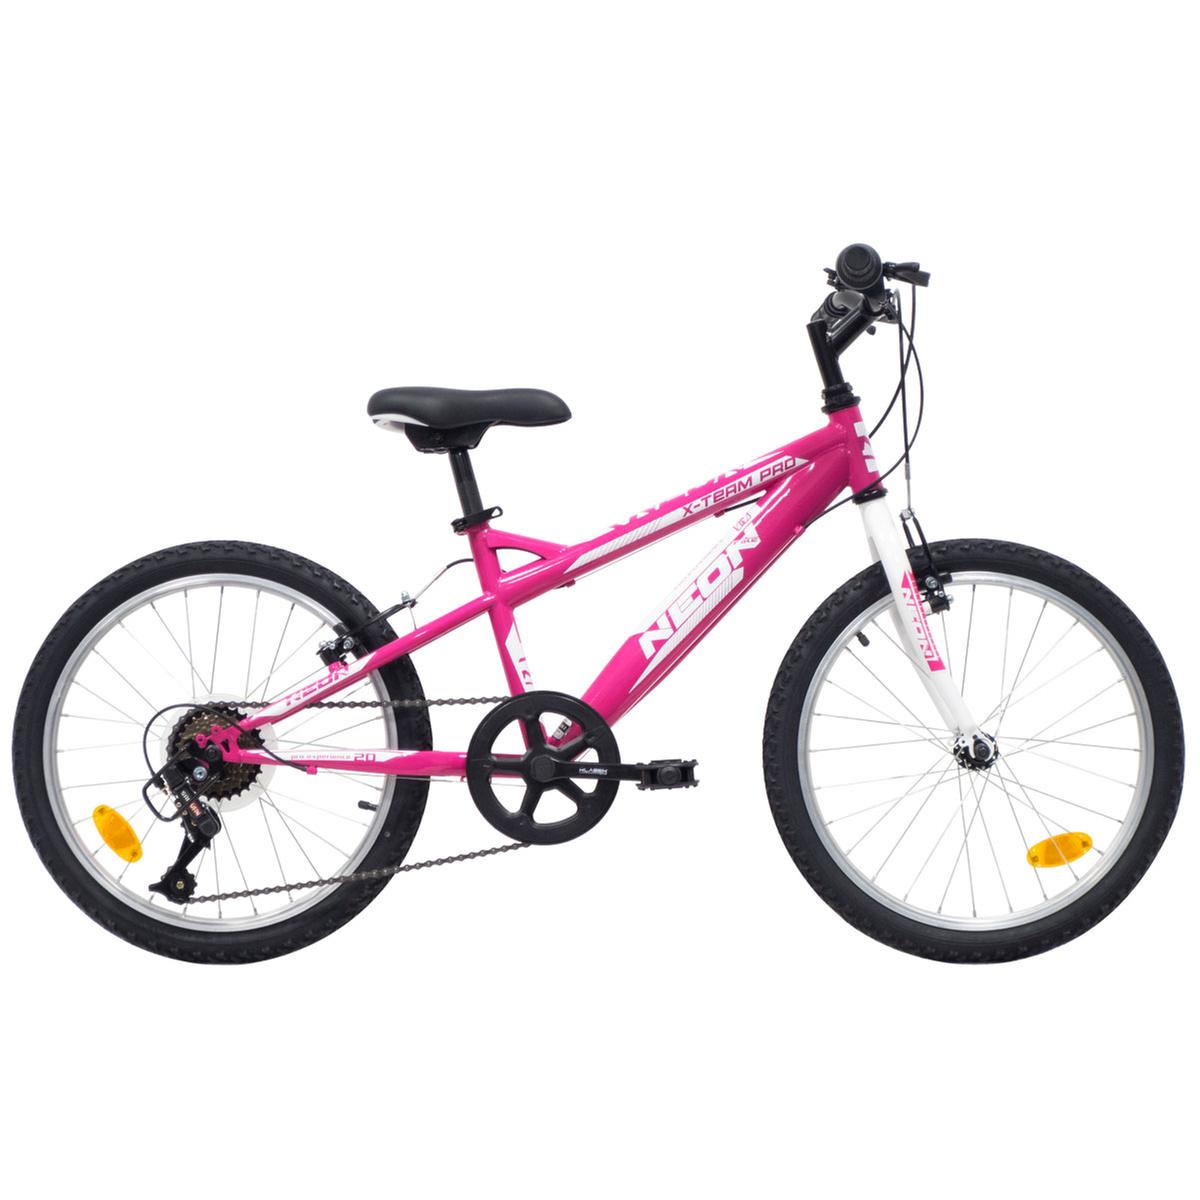 Avigo - Bicicleta Neon 20 Pulgadas Rosa, Bicis 20' Fantasia